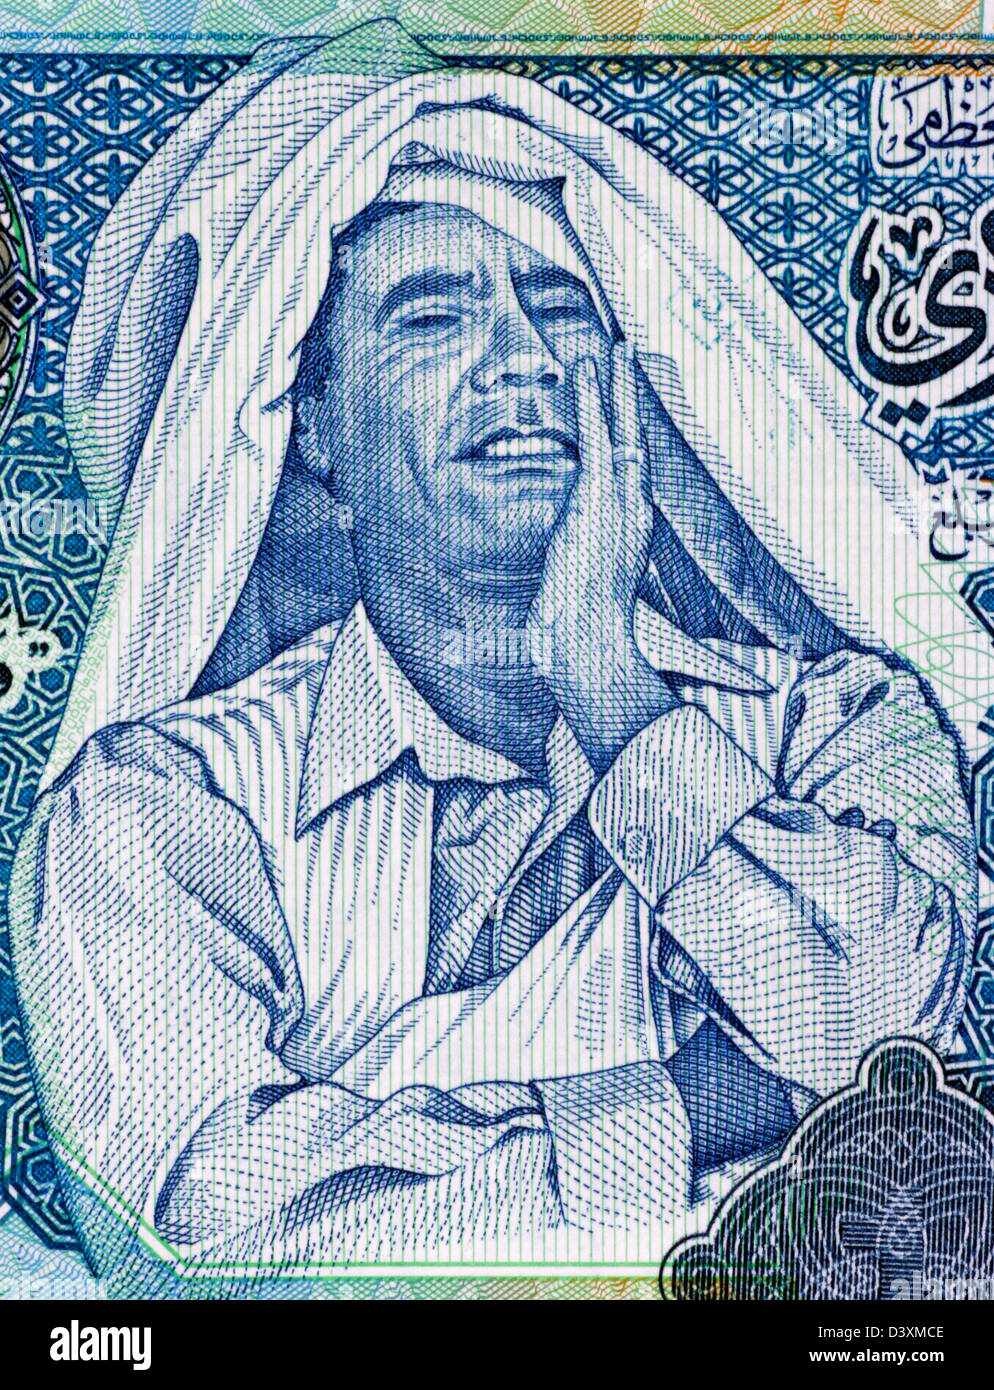 Muammar al-Gaddafi (1942-2011) auf 1 Dinar 2004 Banknote aus Libyen. Herrscher von Libyen 1969-2011. Stockfoto